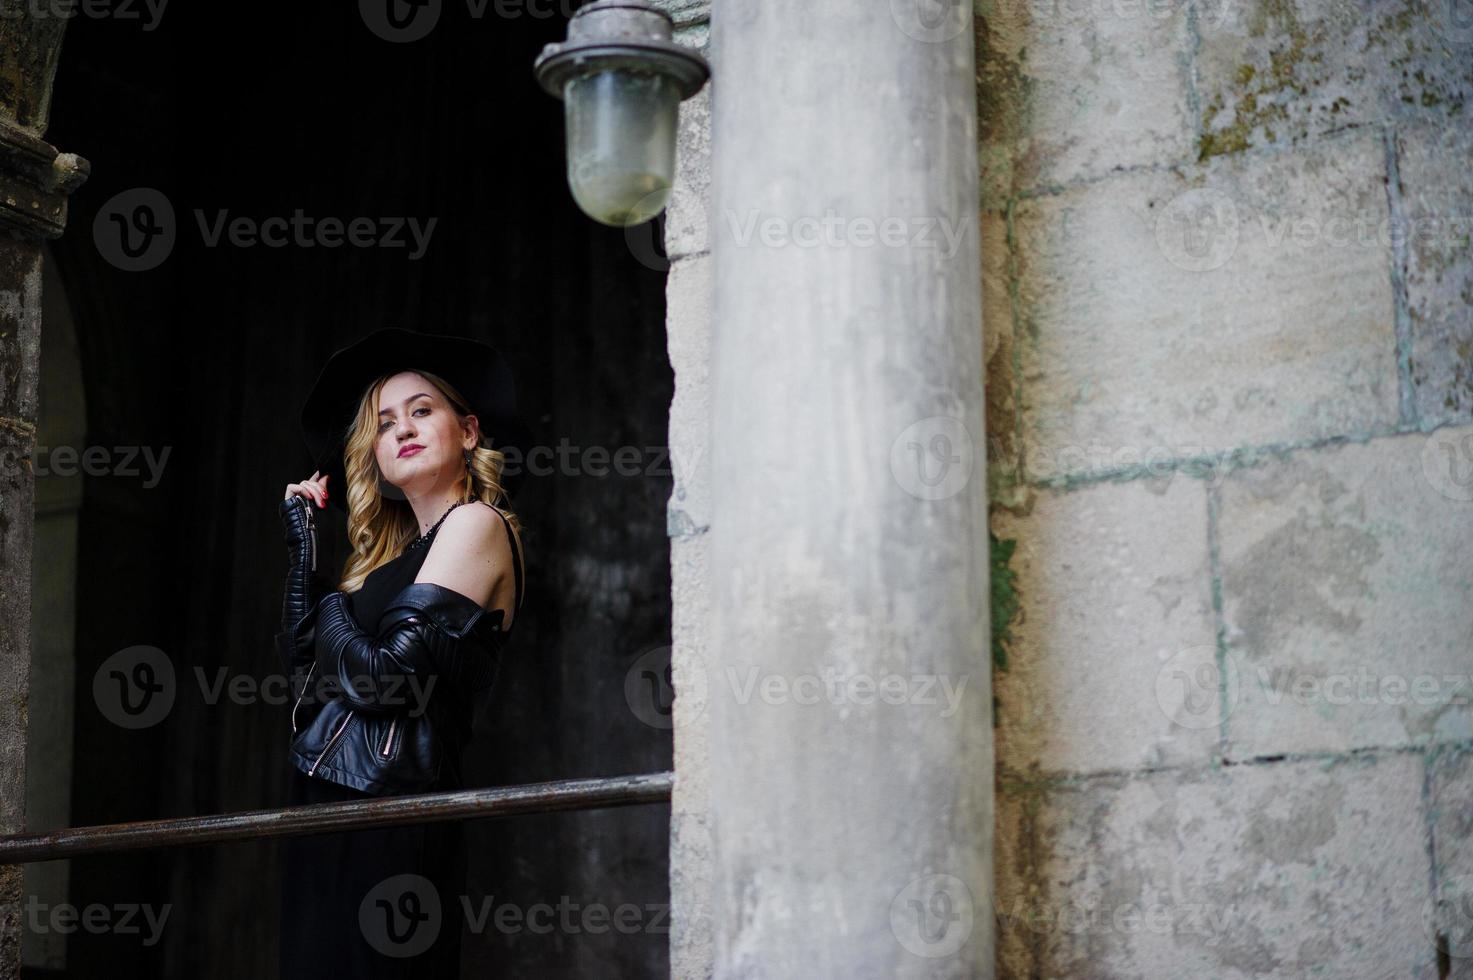 blonde vrouw op zwarte jurk, leren jas, kettingen en hoed tegen de oude straat van de stad. foto